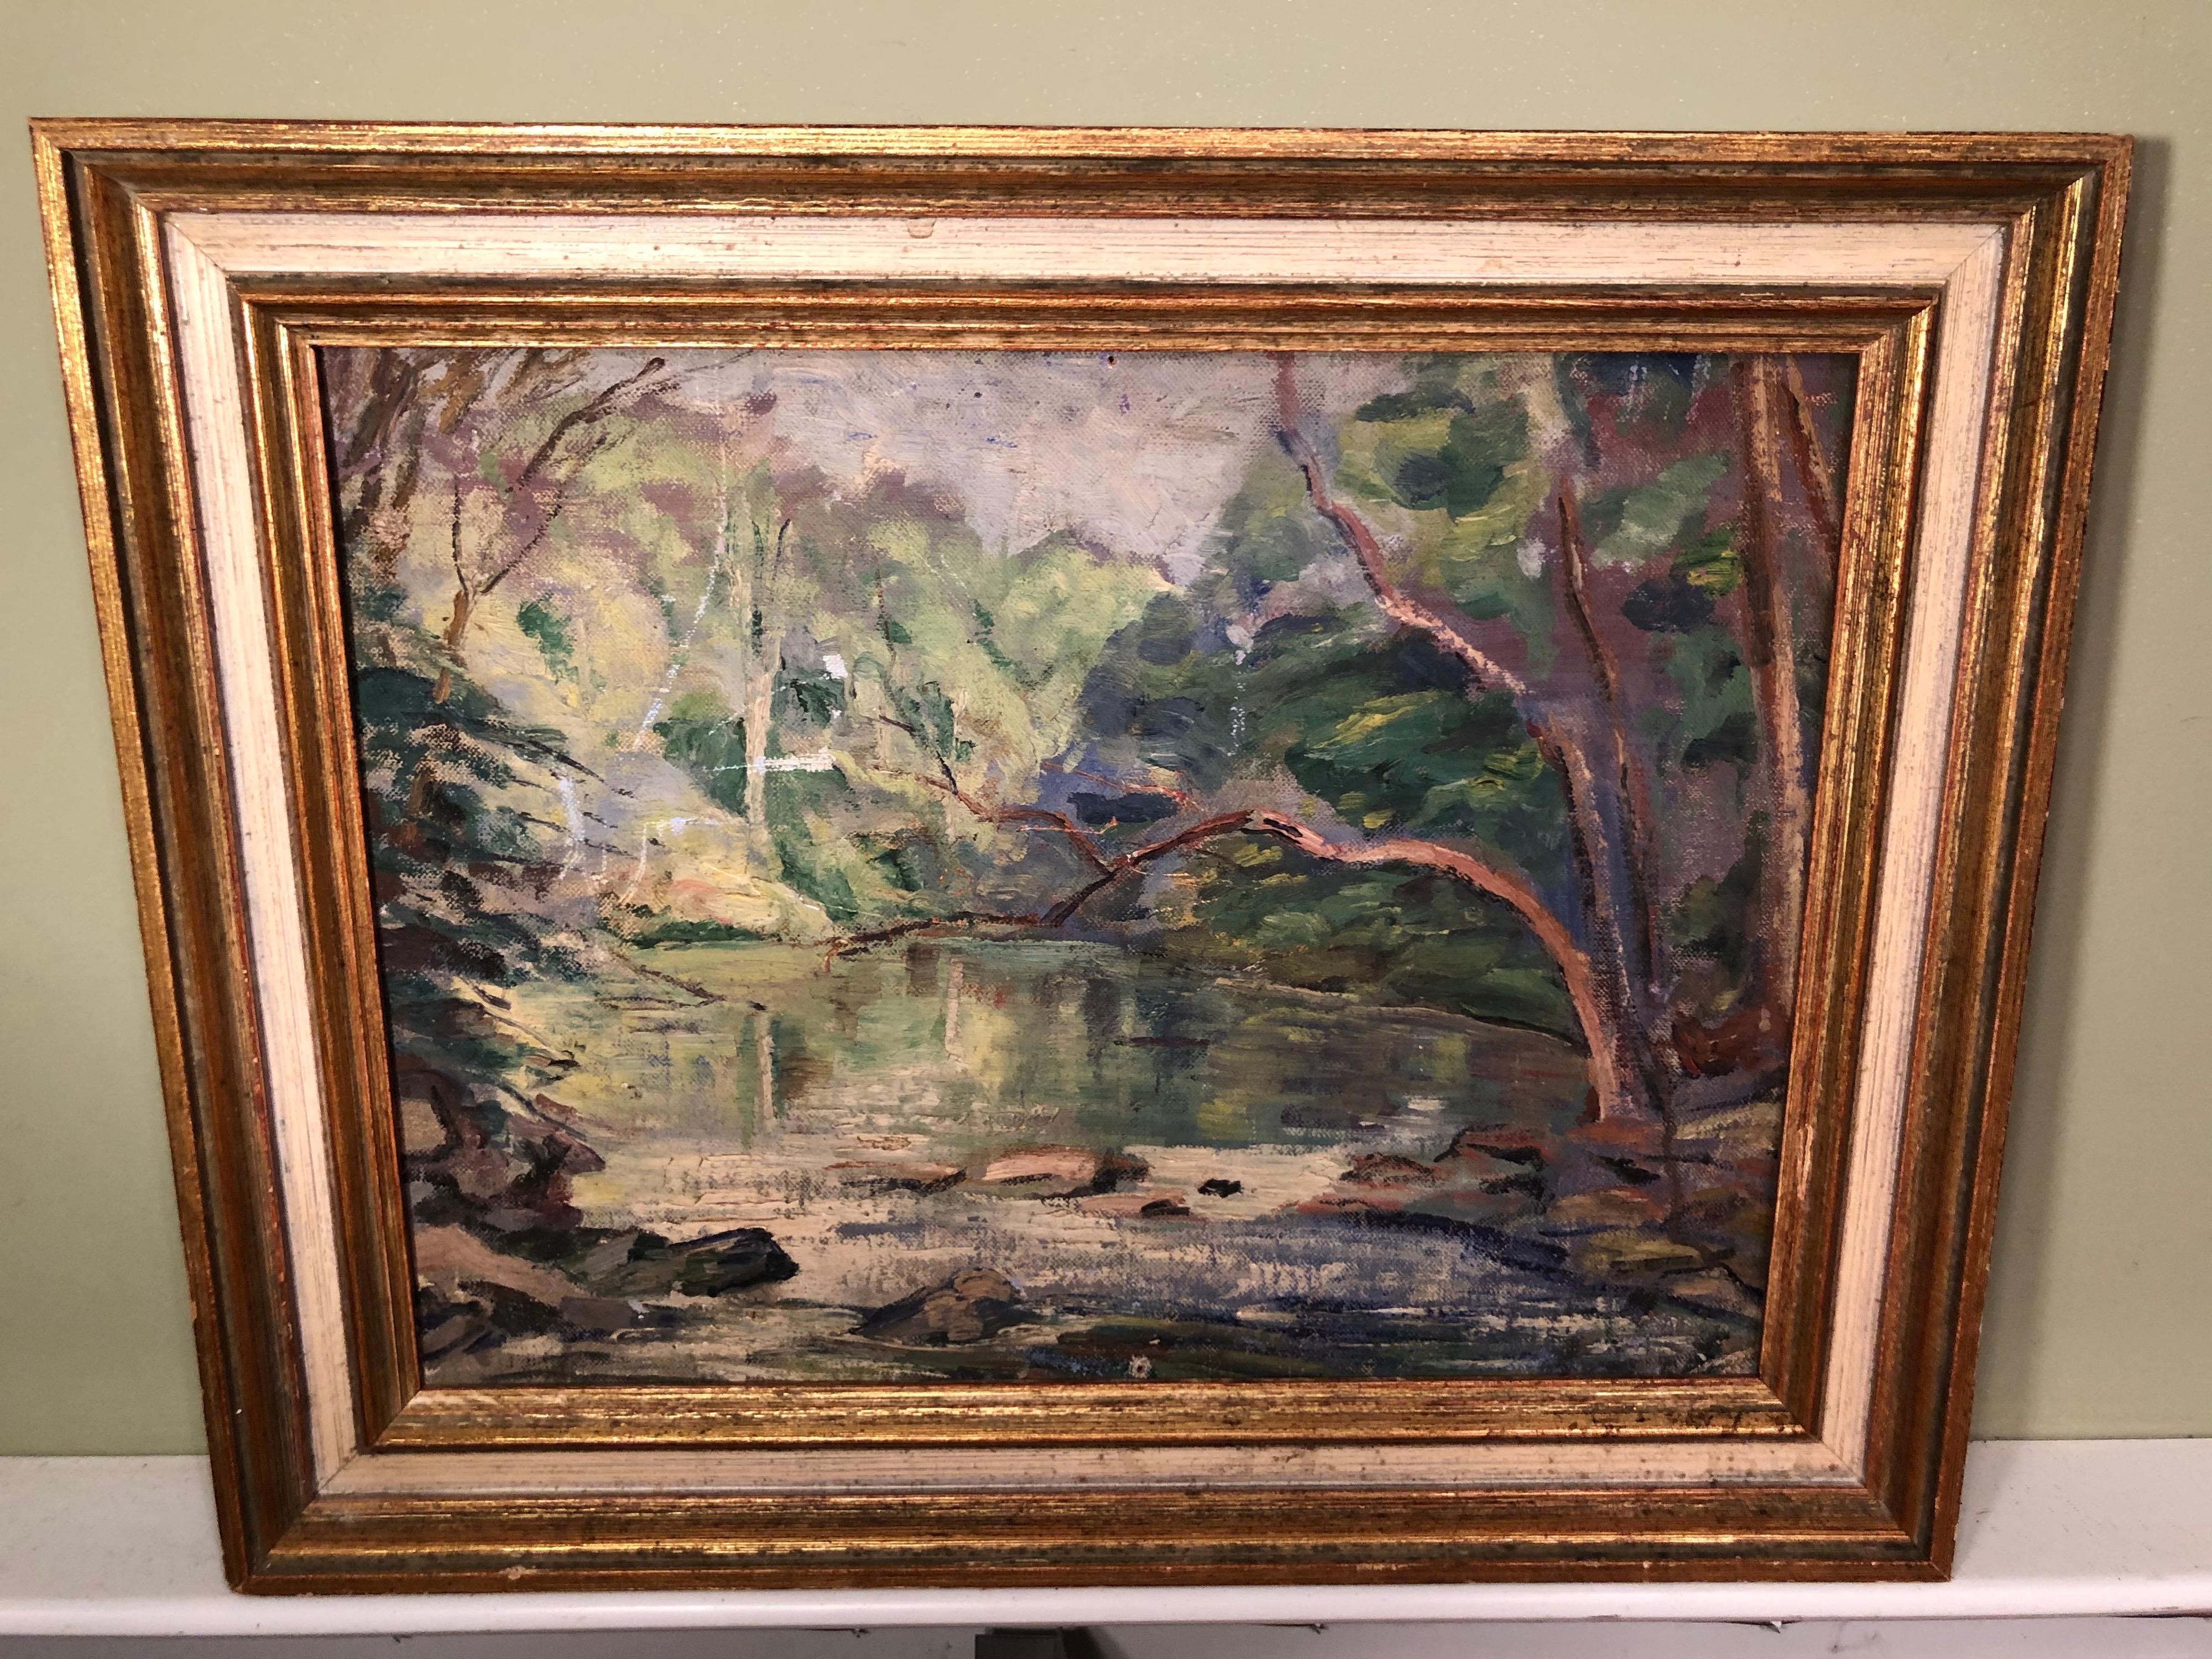 Peinture du début du 20e siècle représentant un cours d'eau. Ce cadre bucolique et idyllique apporte beaucoup de paix à l'observateur. Encadré dans un solide cadre en bois.